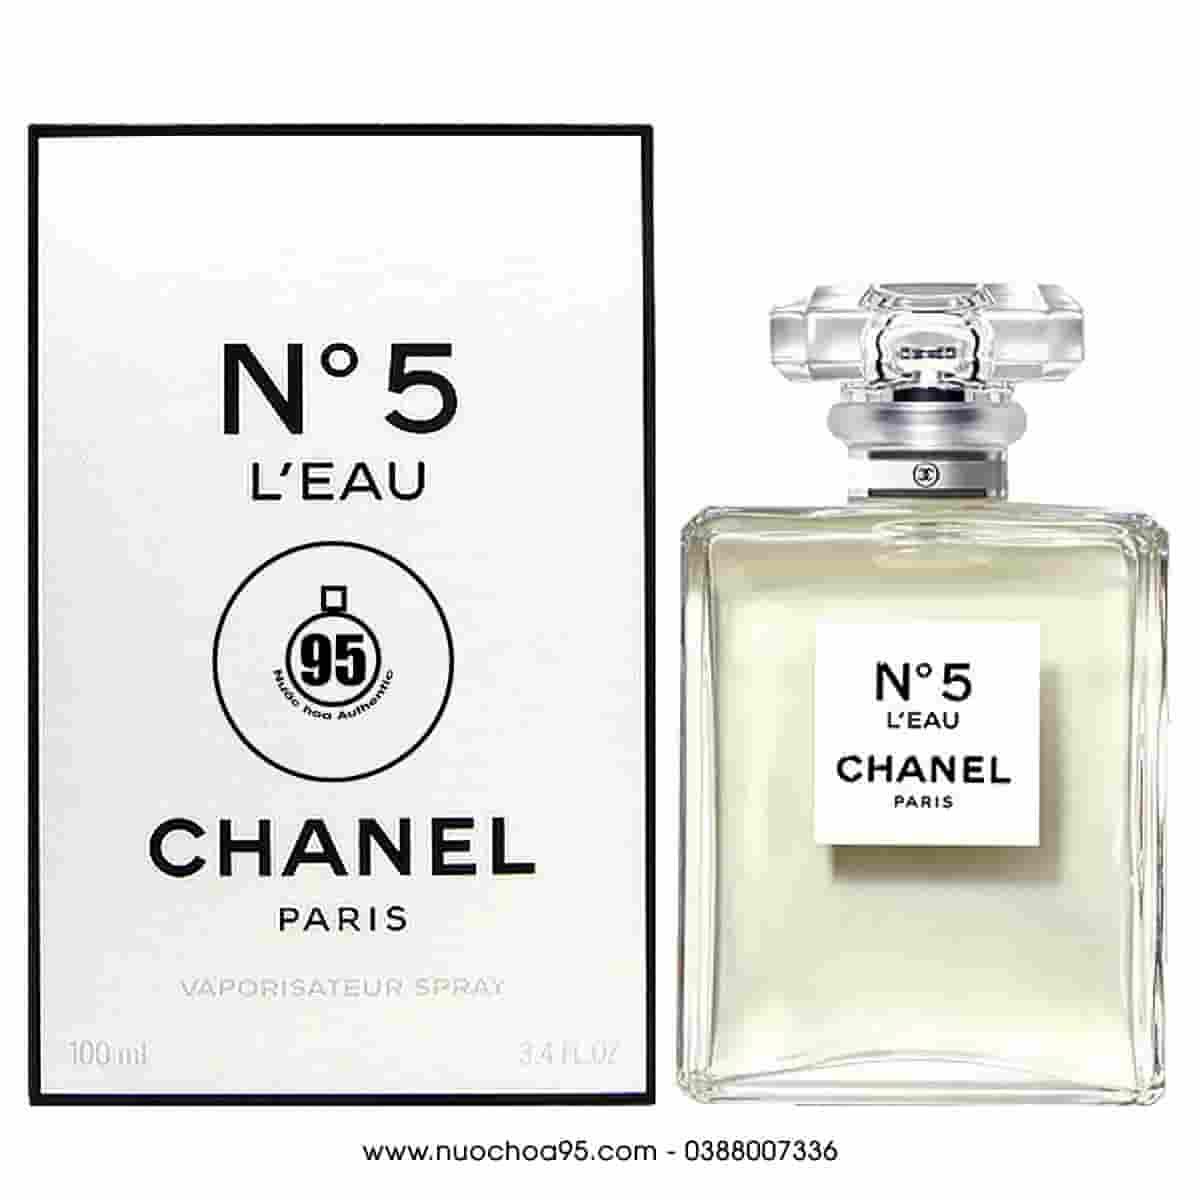 Nước hoa Chanel No 5 L'Eau